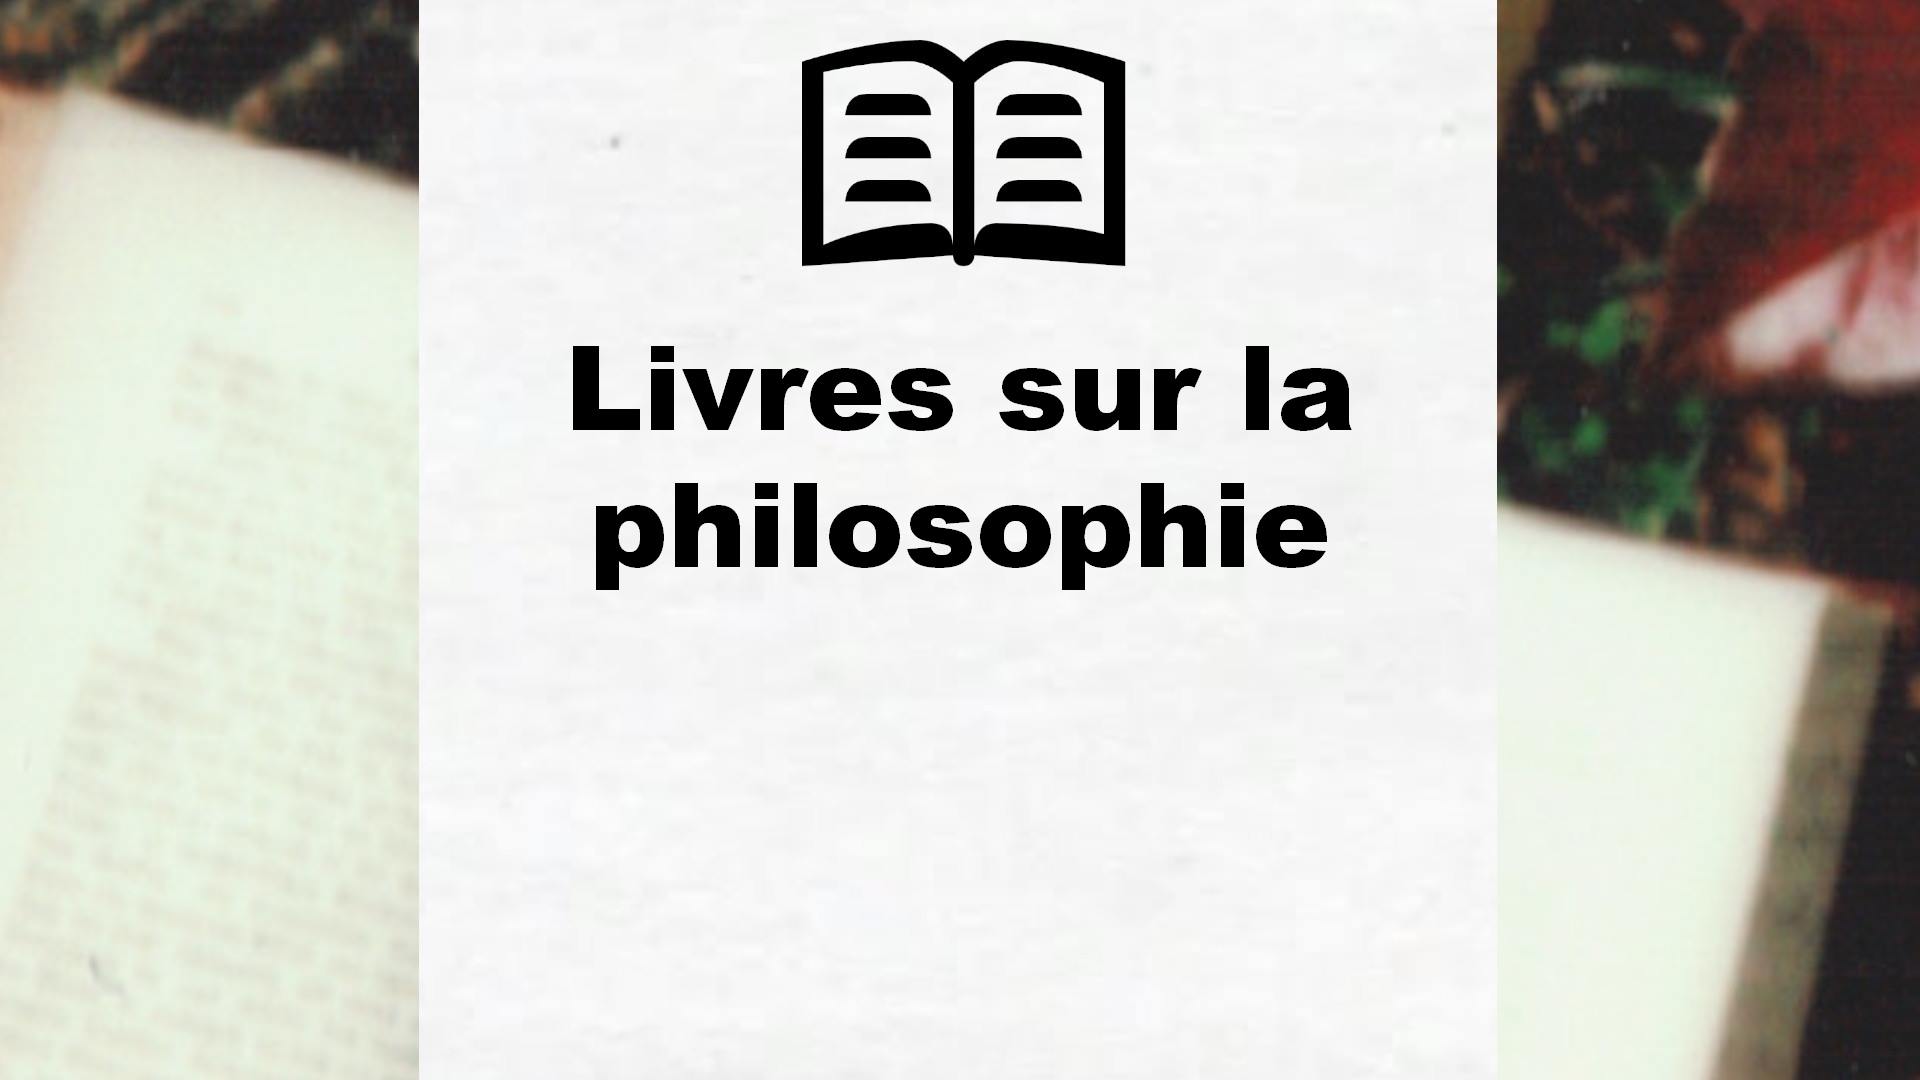 Livres sur la philosophie